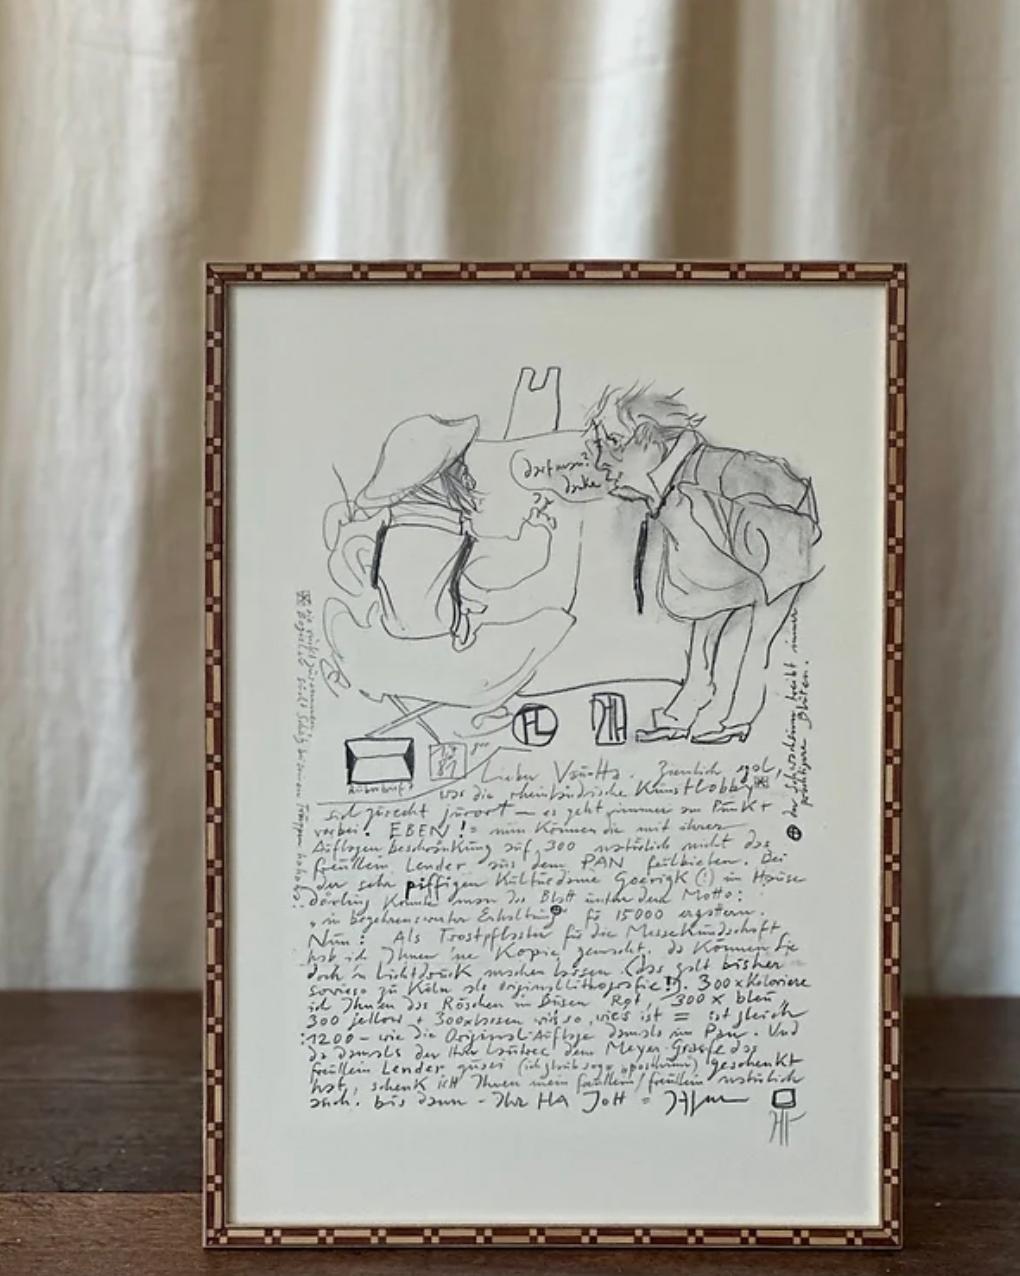 Gerahmter handsignierter Lichtdruck von 1981
Humorvolles Self-Portrait mit Henri de Toulouse-Lautrec

Signiert mit Bleistift unten rechts: HJanssen

Horst Janssen (14. November 1929 - 31. August 1995) war ein deutscher Zeichner, Grafiker,